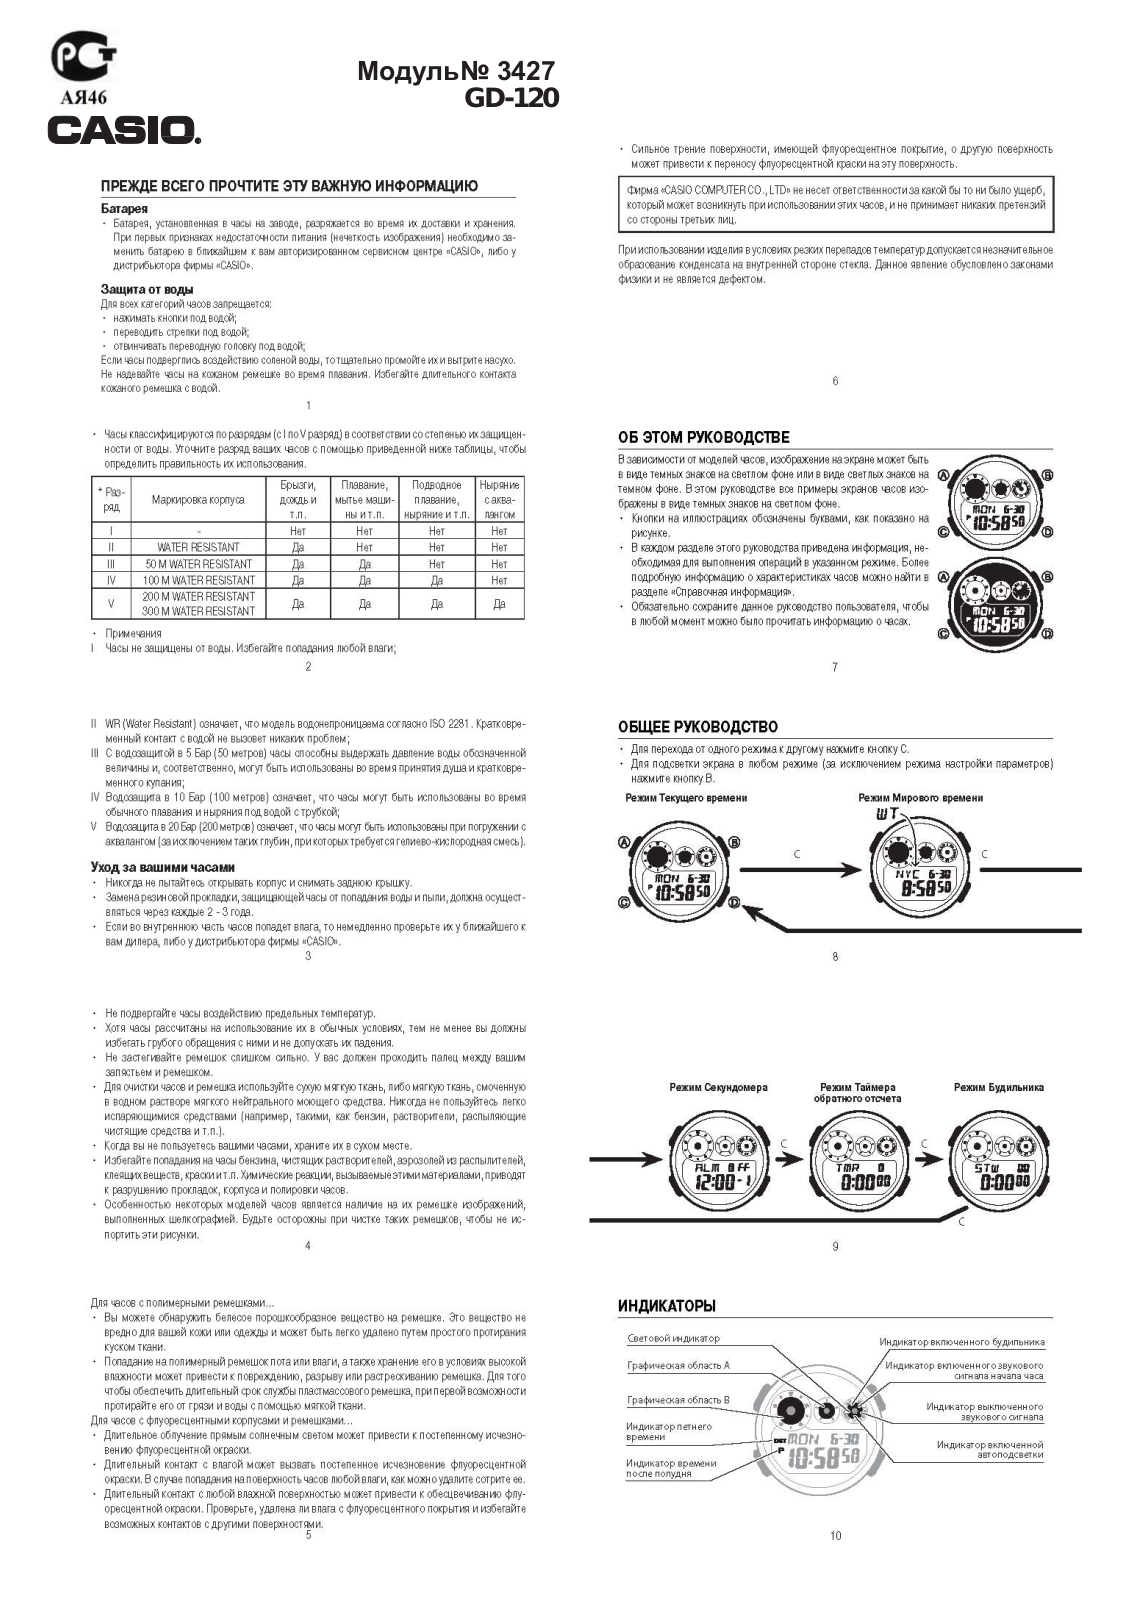 Casio GD-120CM-8E User Manual